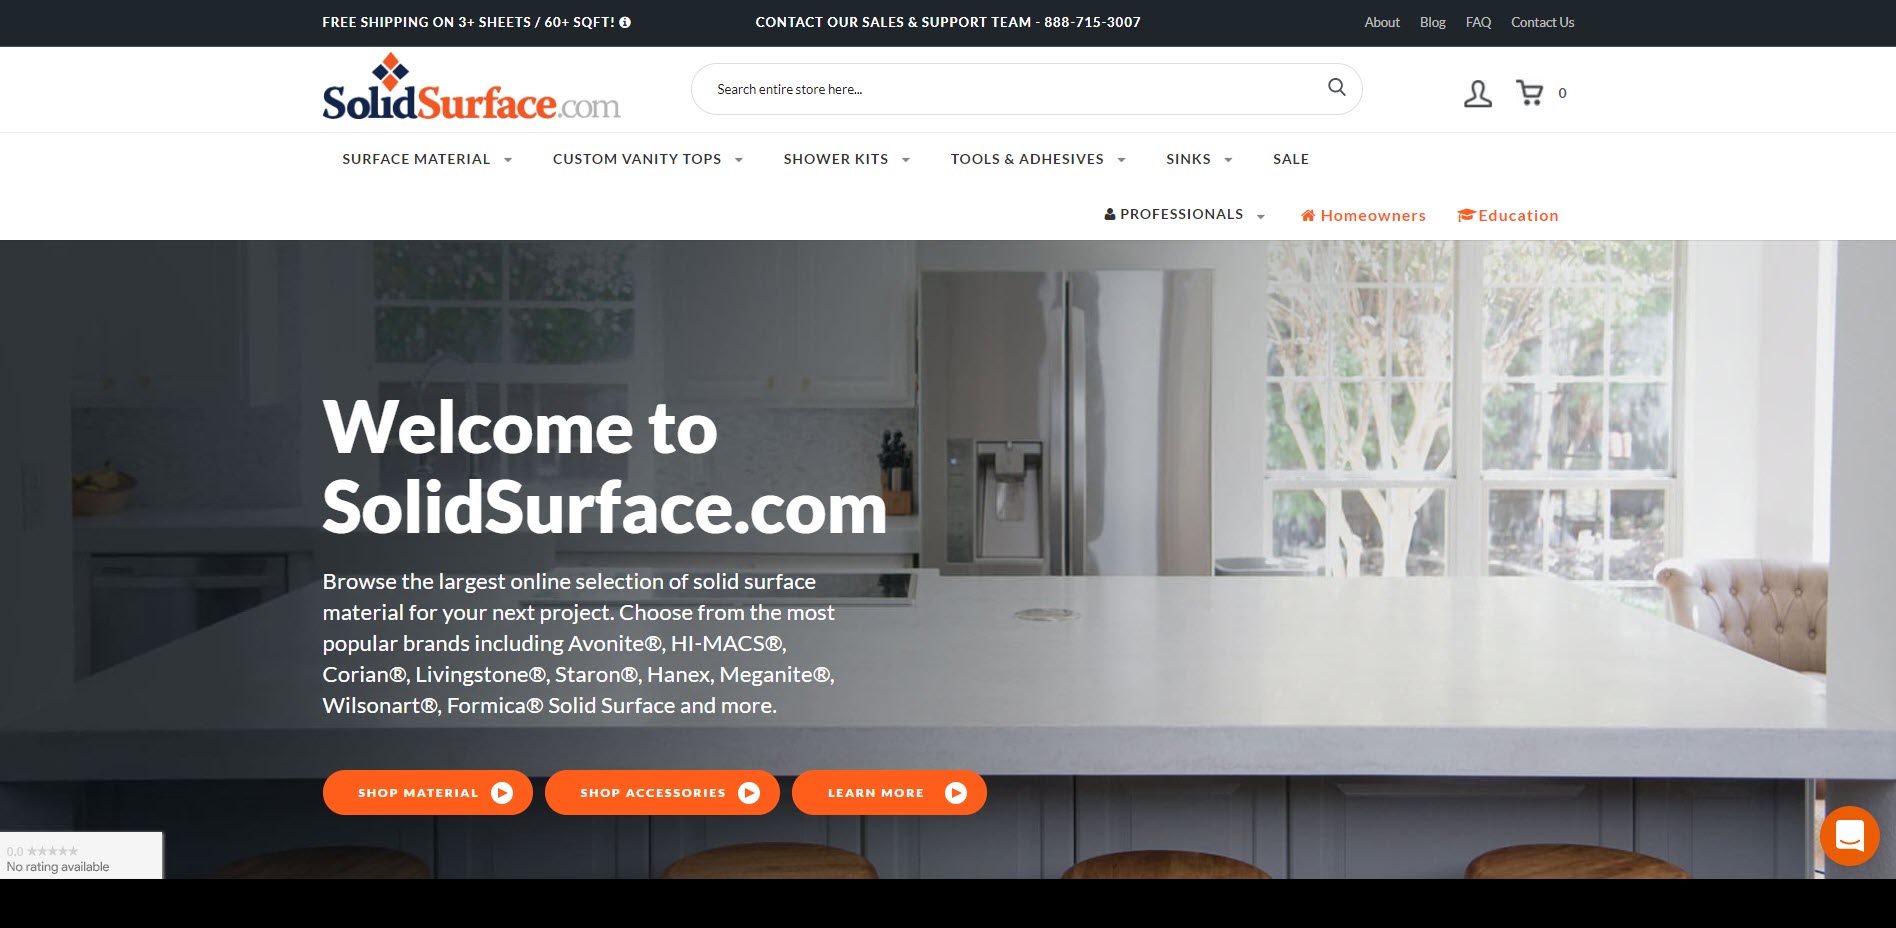 SolidSurface.com Website Homepage